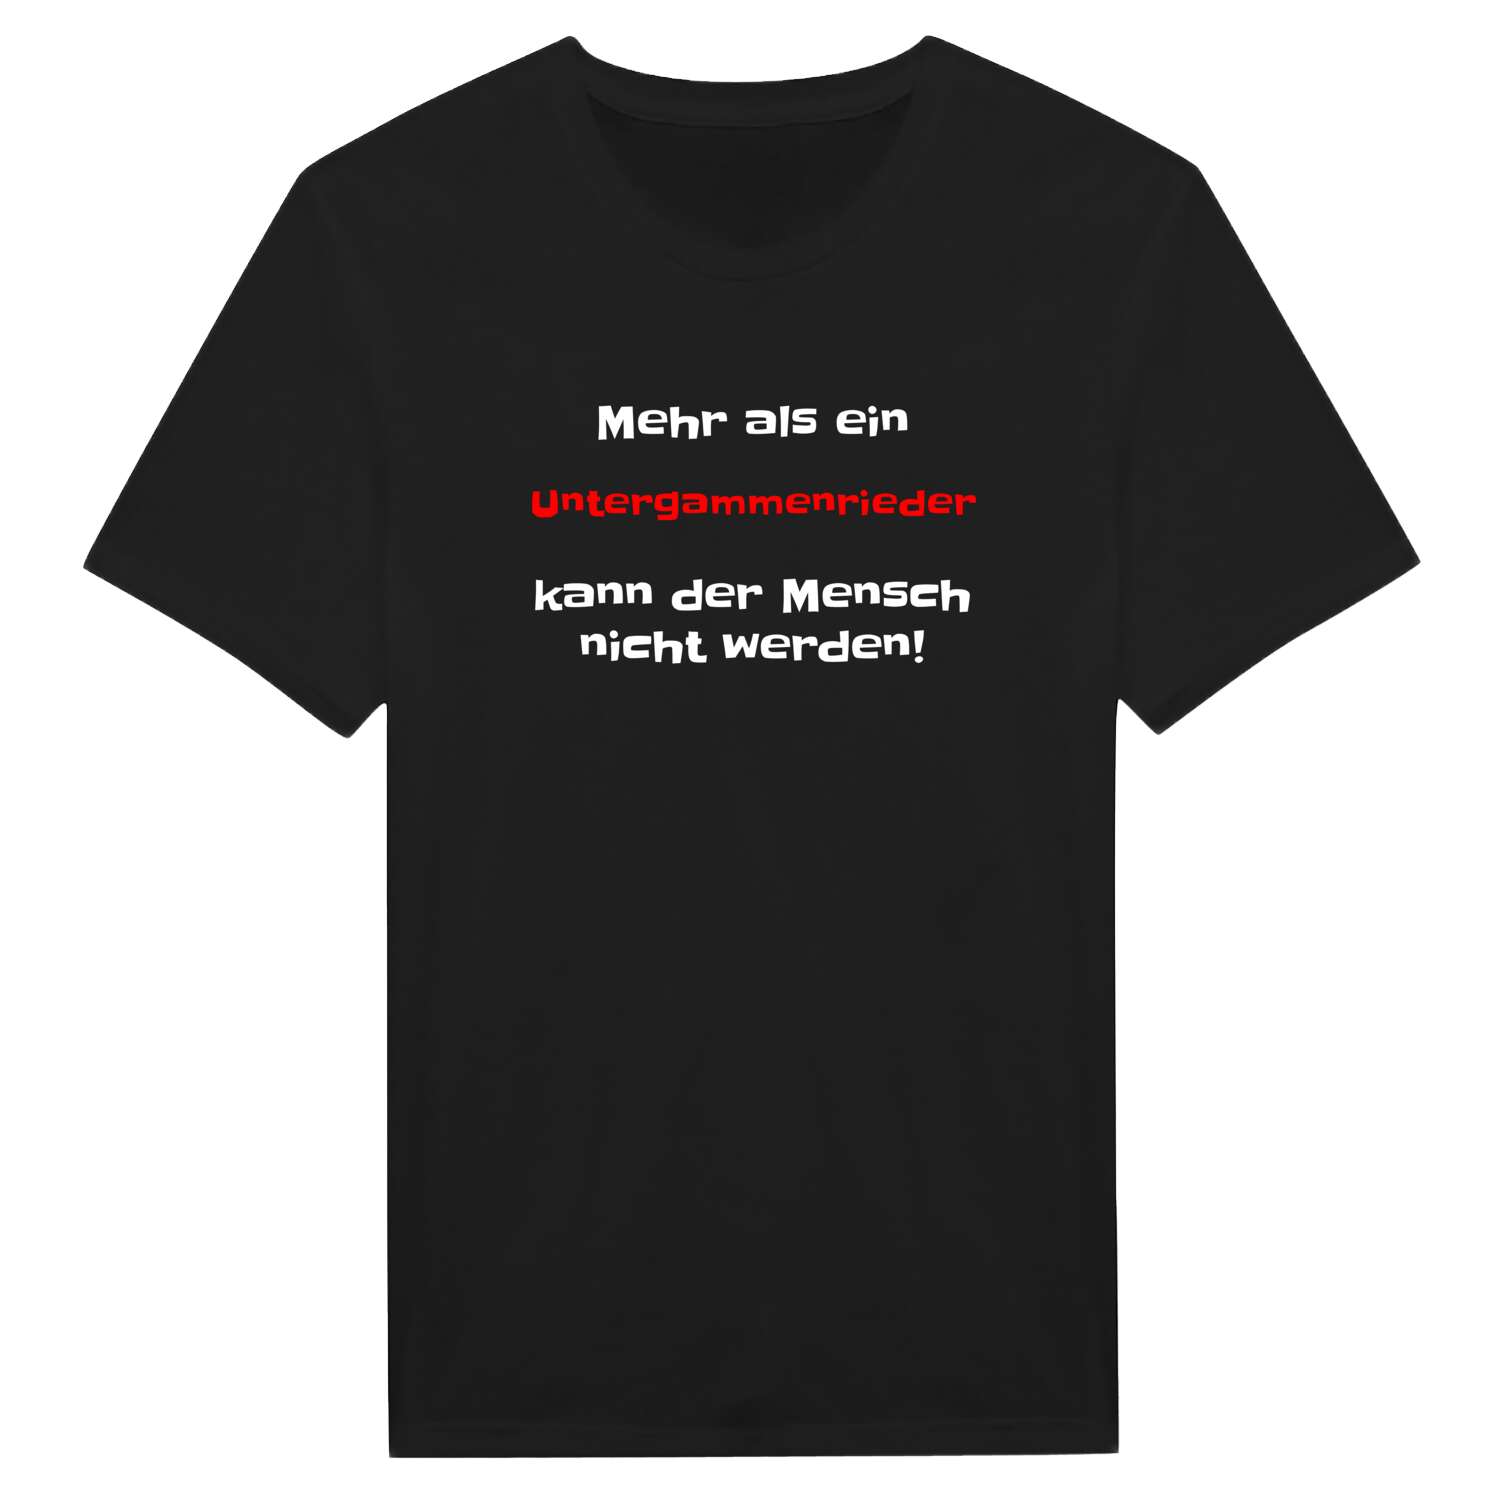 Untergammenried T-Shirt »Mehr als ein«